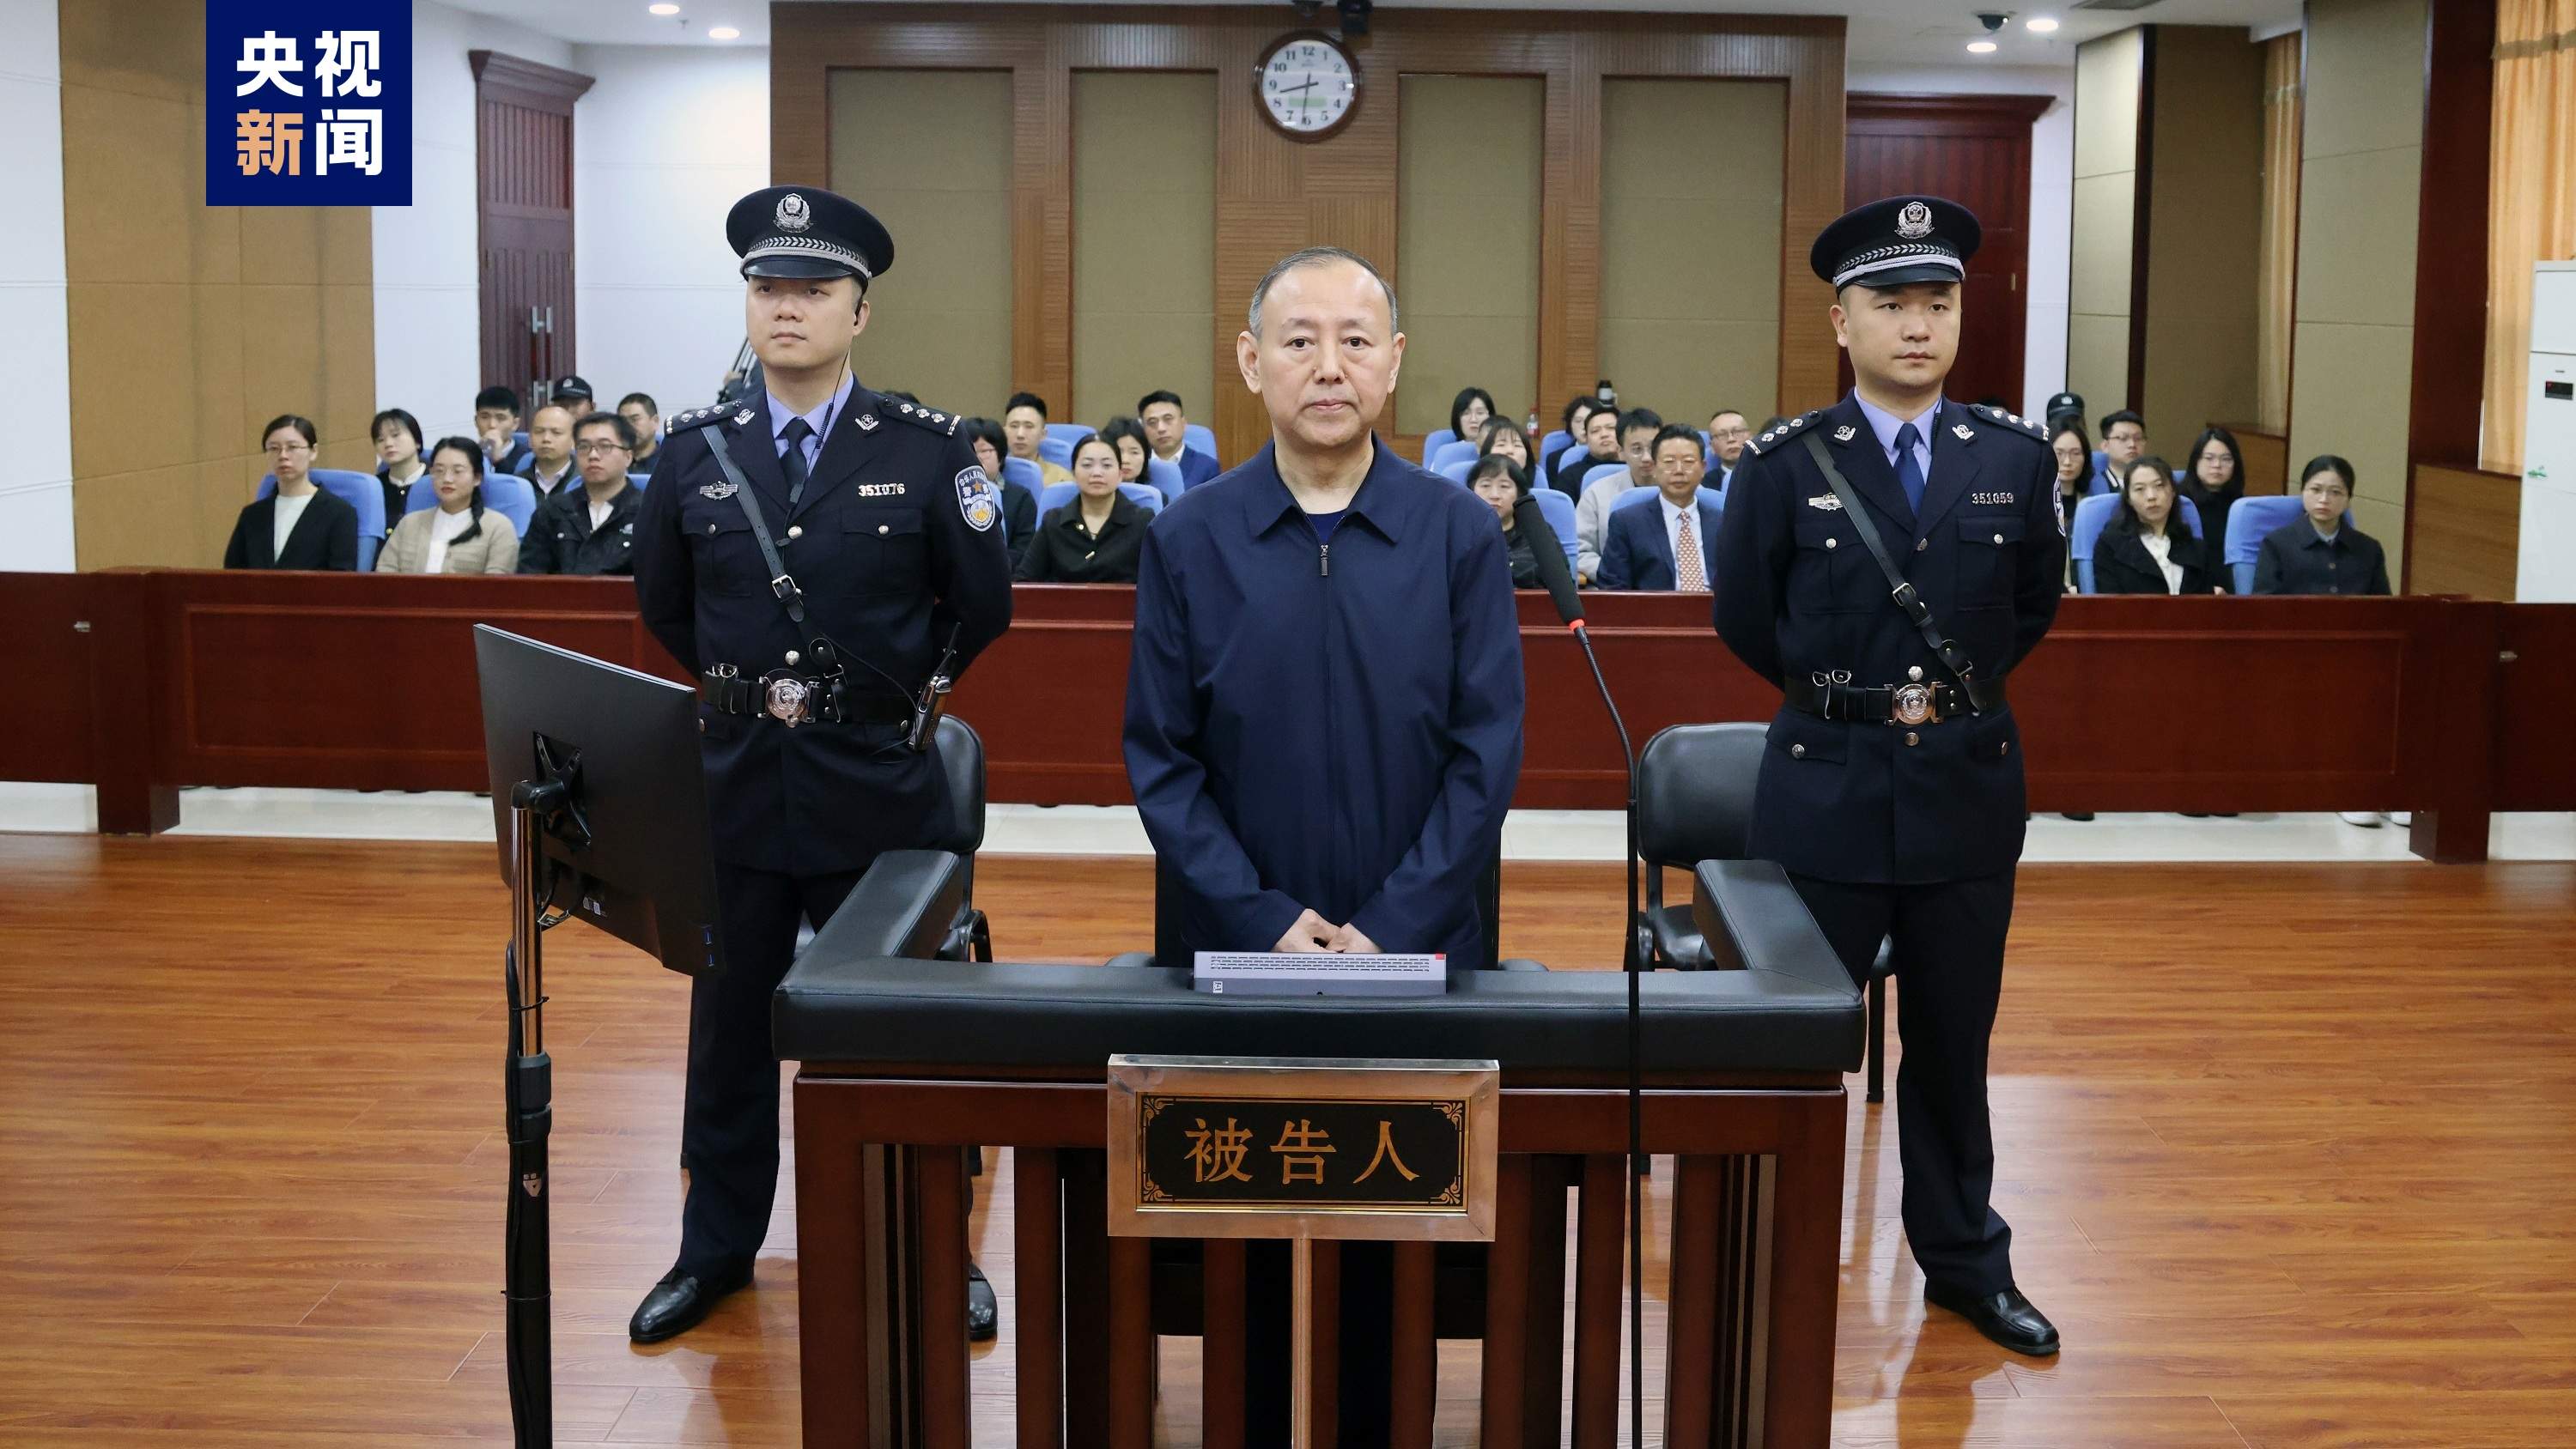 原应急处分部消防声援局副局长张福生受贿案一审开庭